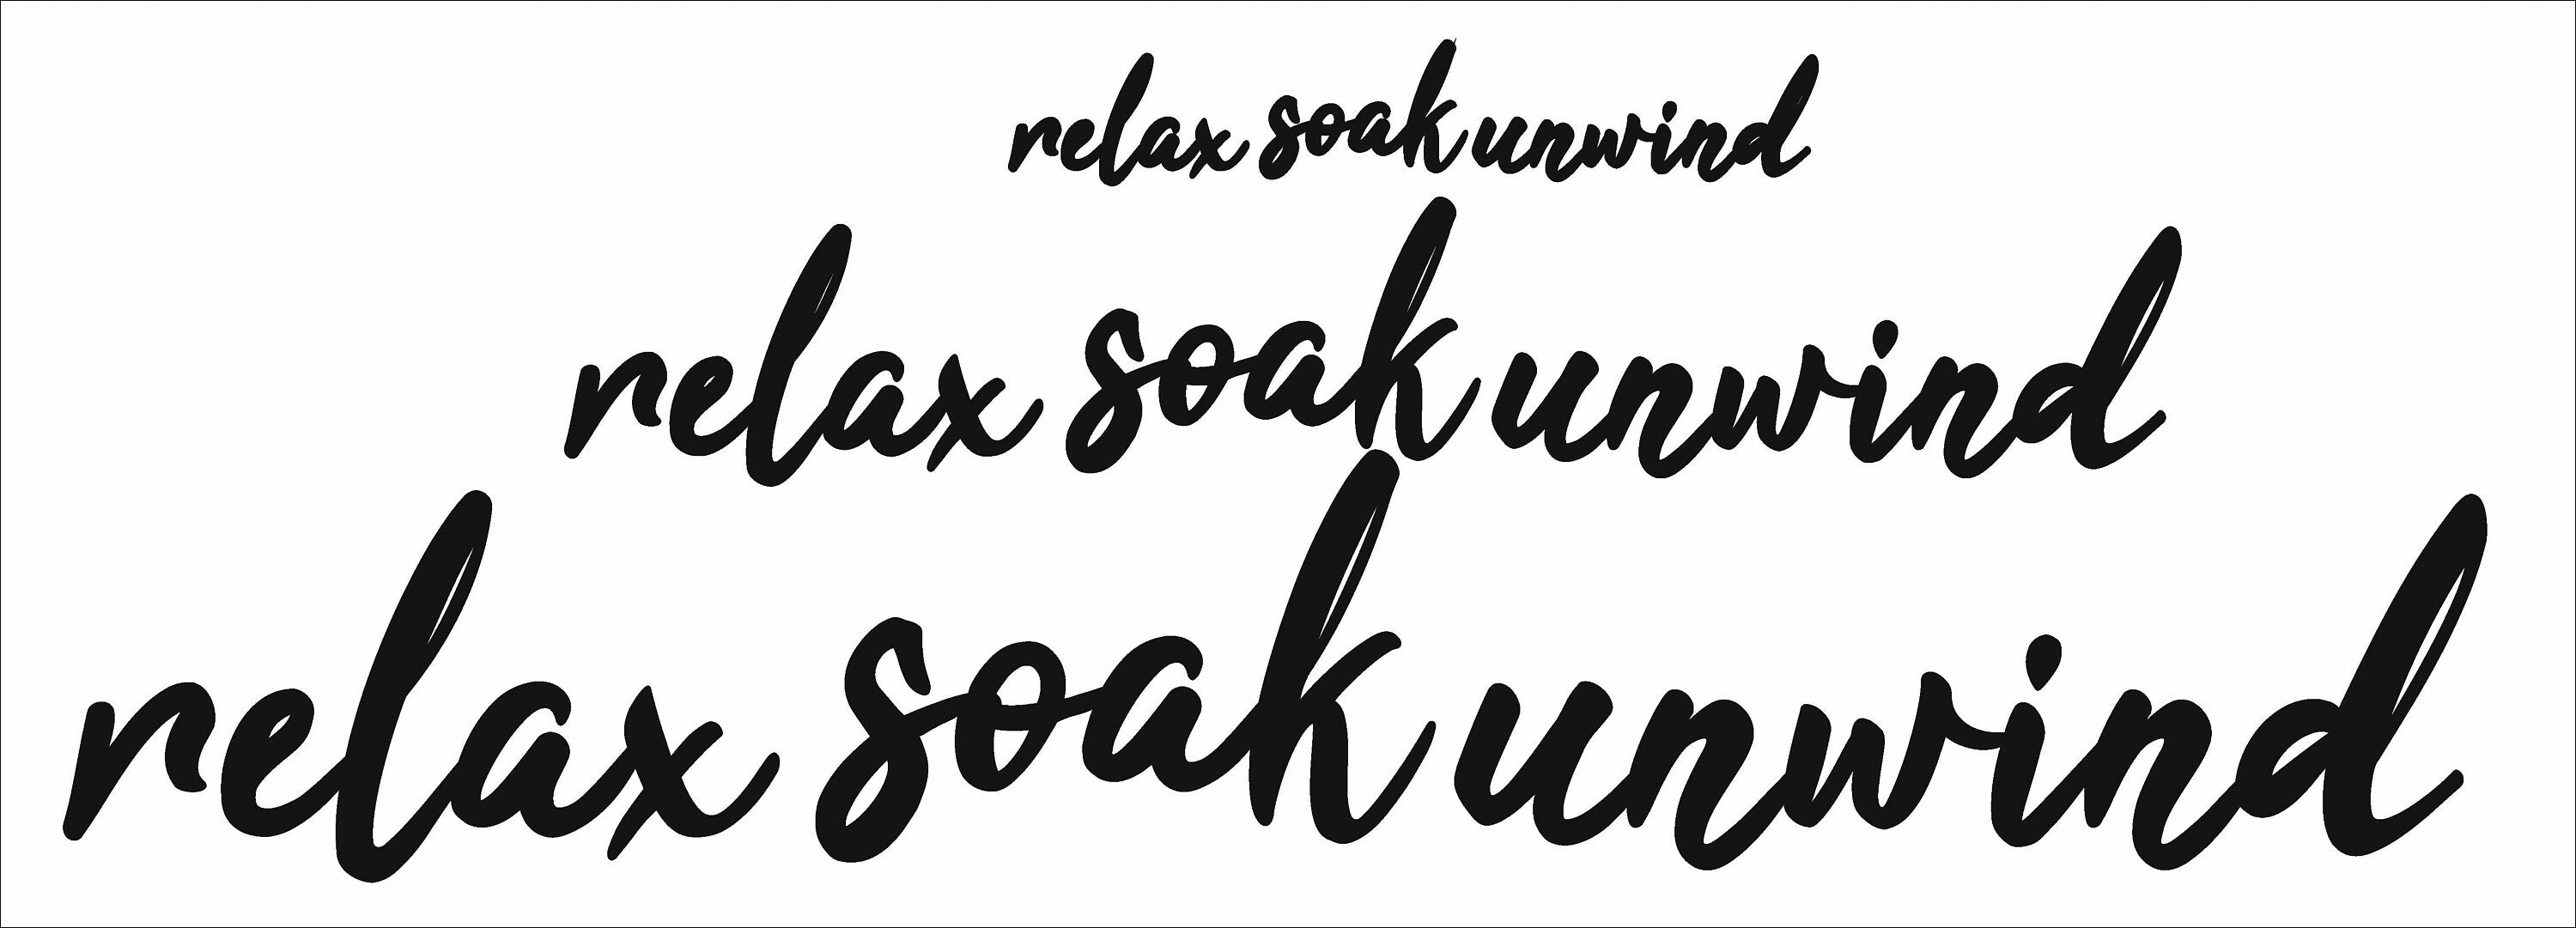 Relax Soak Unwind Word Art - Wooden Word Text Art - Bathroom Art Gift - Font 1